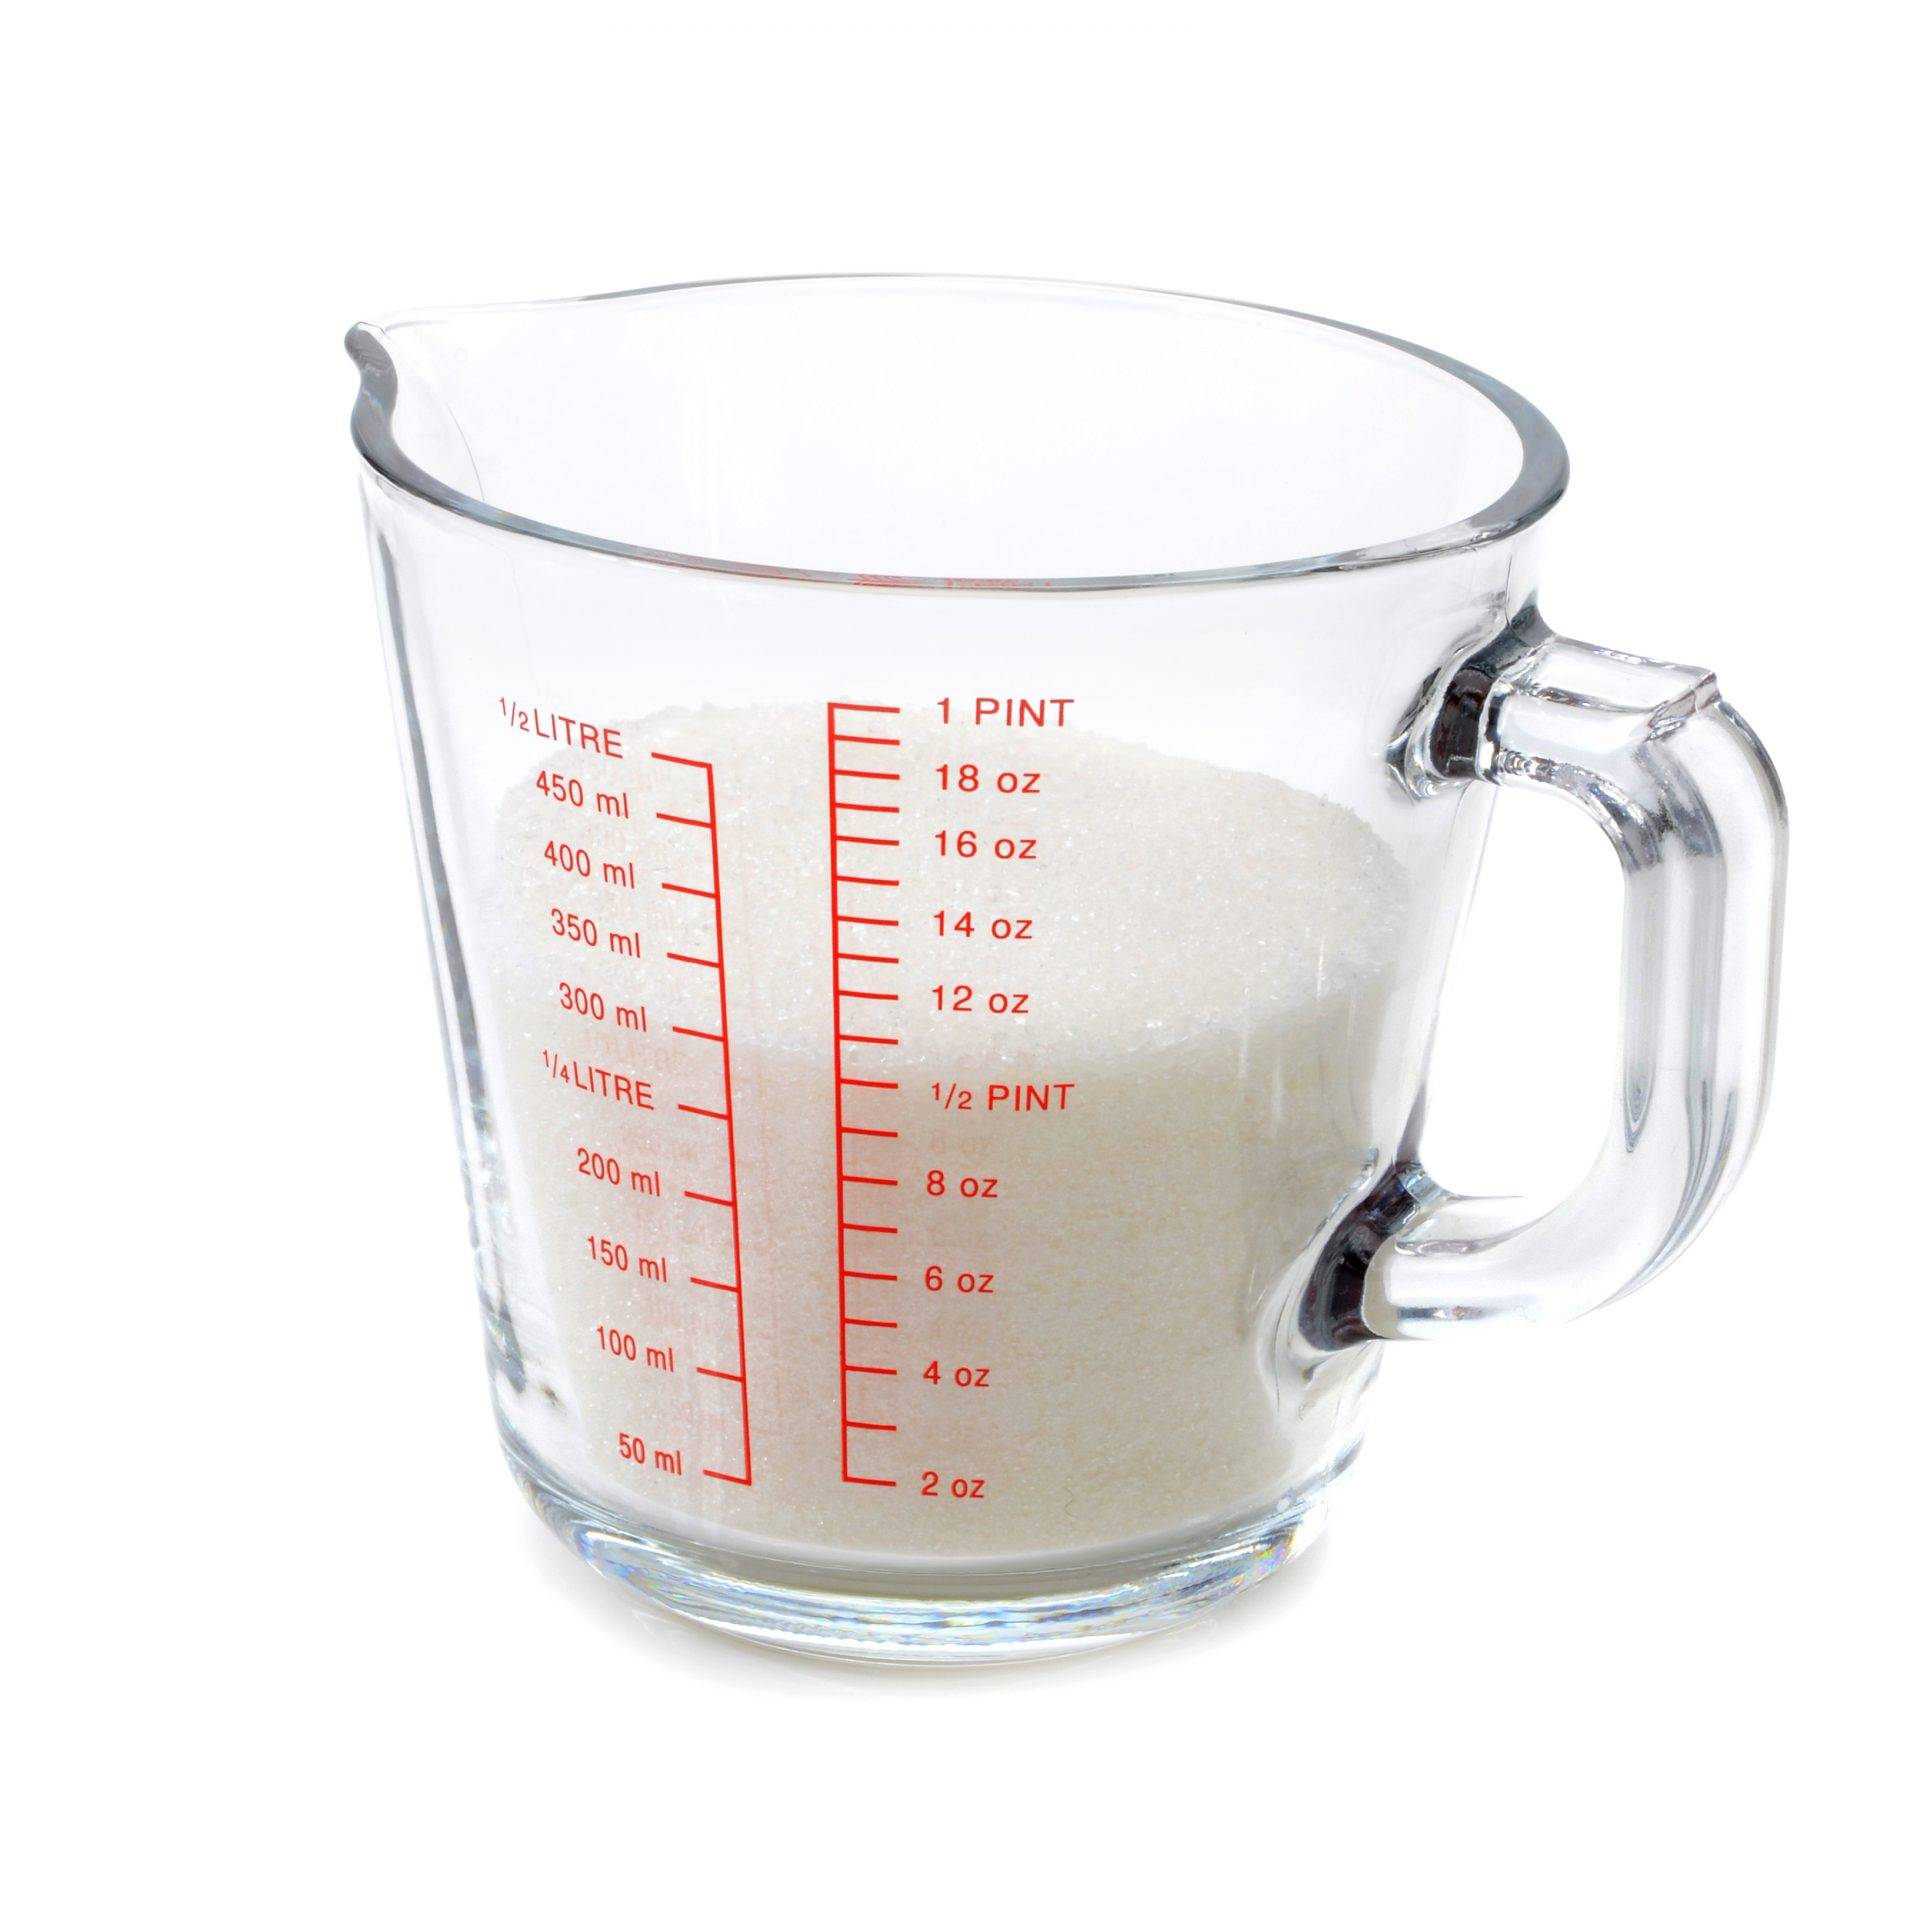 Сколько мл или грамм в стакане? сколько воды помещается в стакане? — vesit-skolko.ru